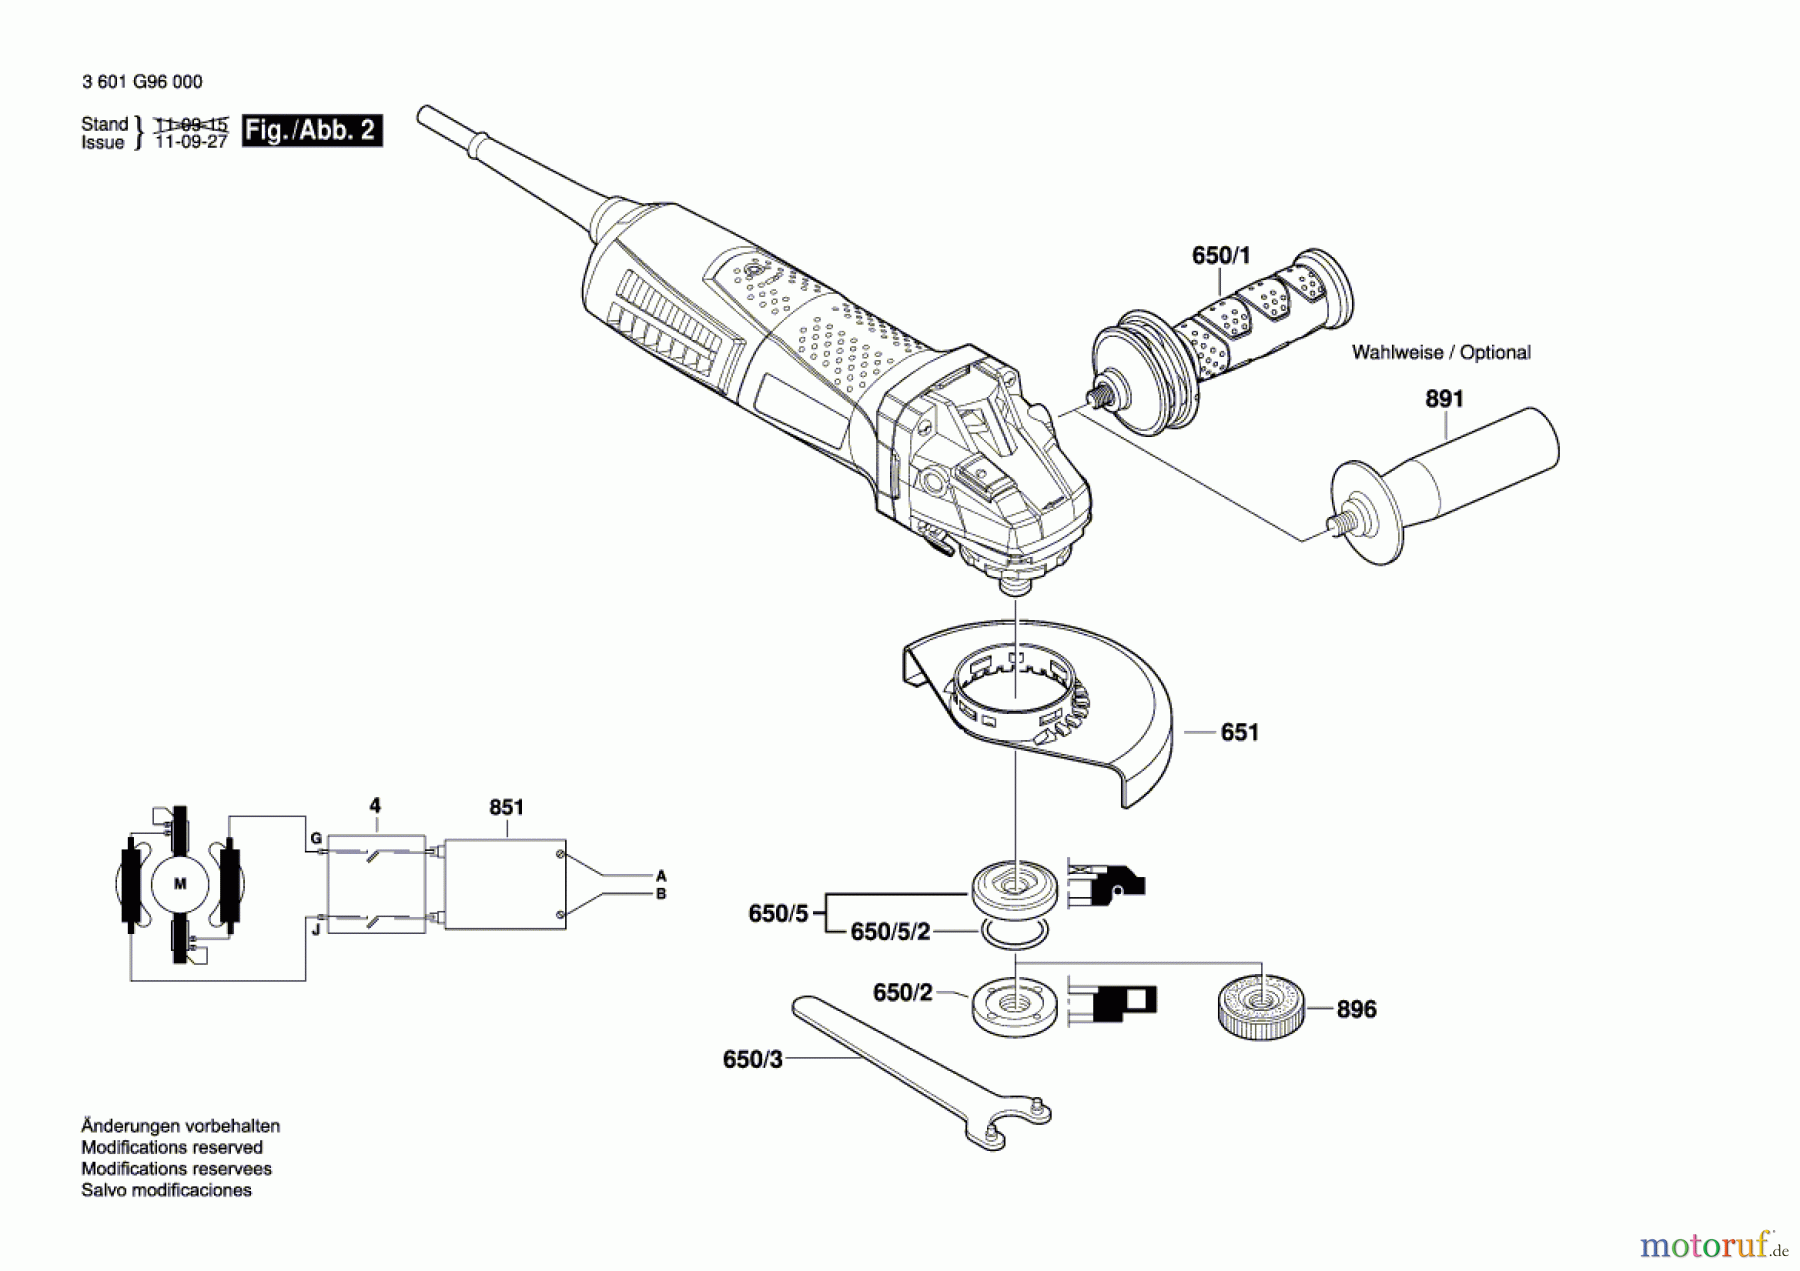  Bosch Werkzeug Winkelschleifer GWS 15-125 CIT Seite 2